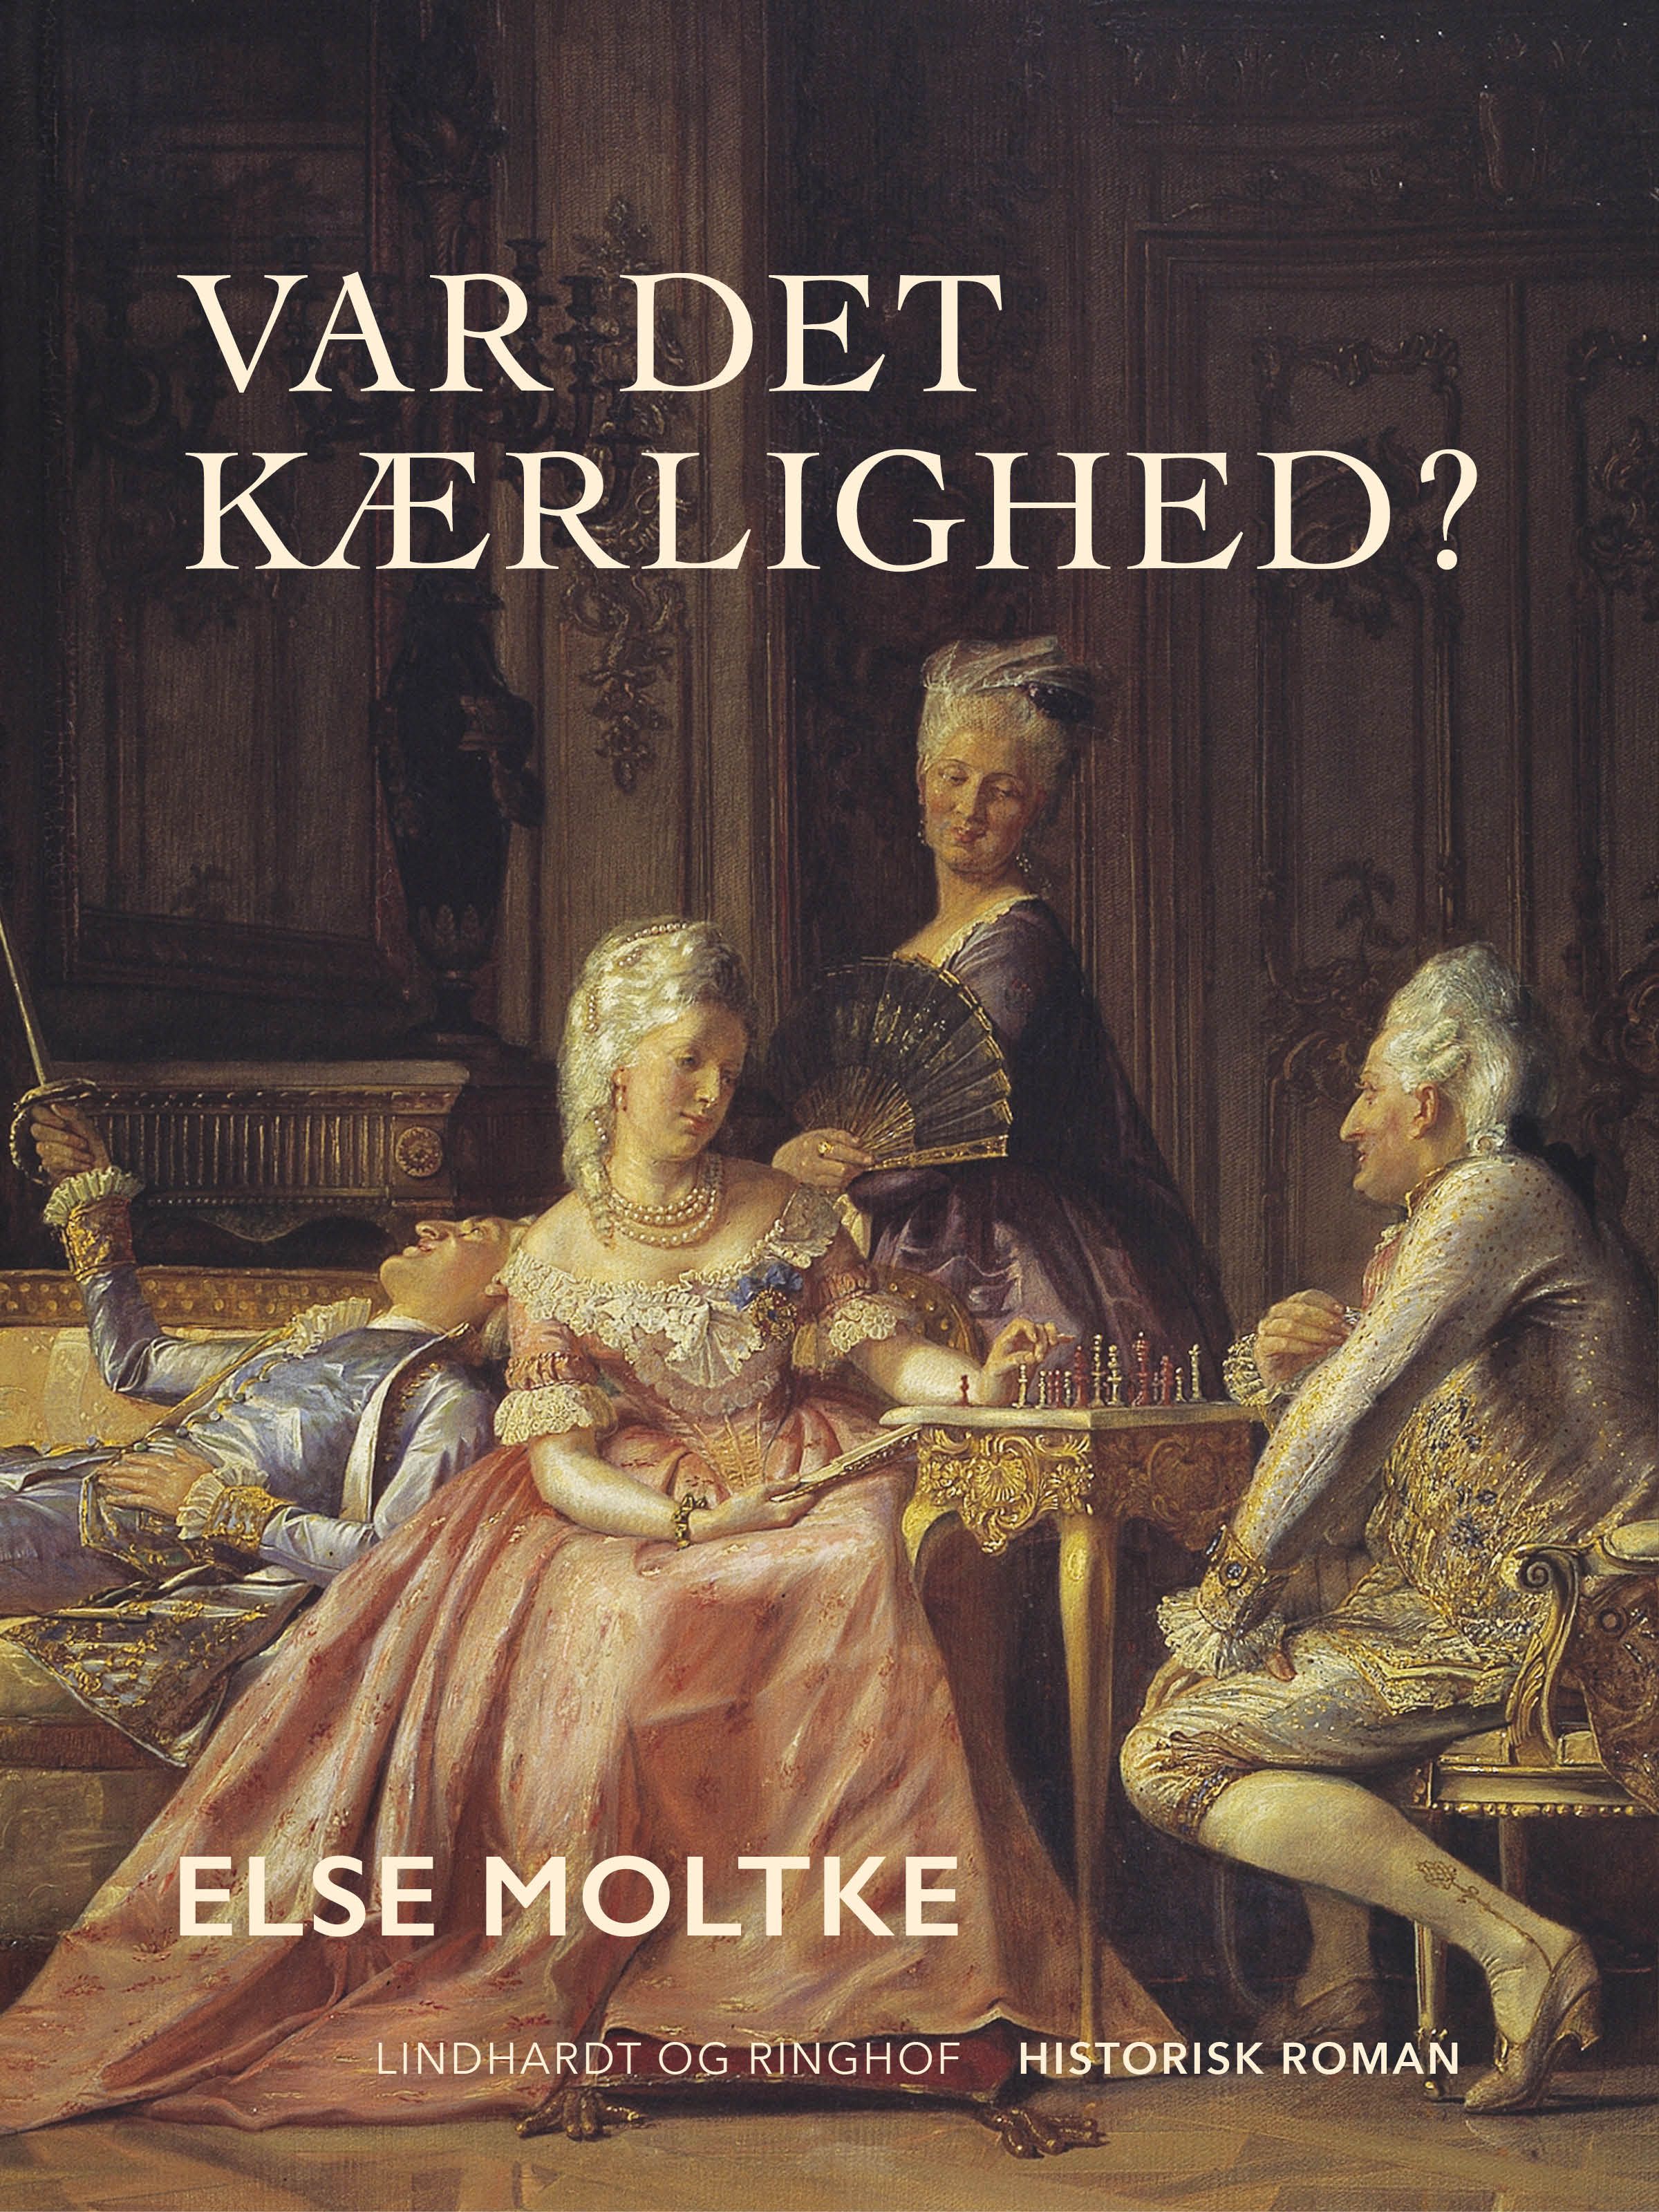 Var det kærlighed?, e-bok av Else Moltke